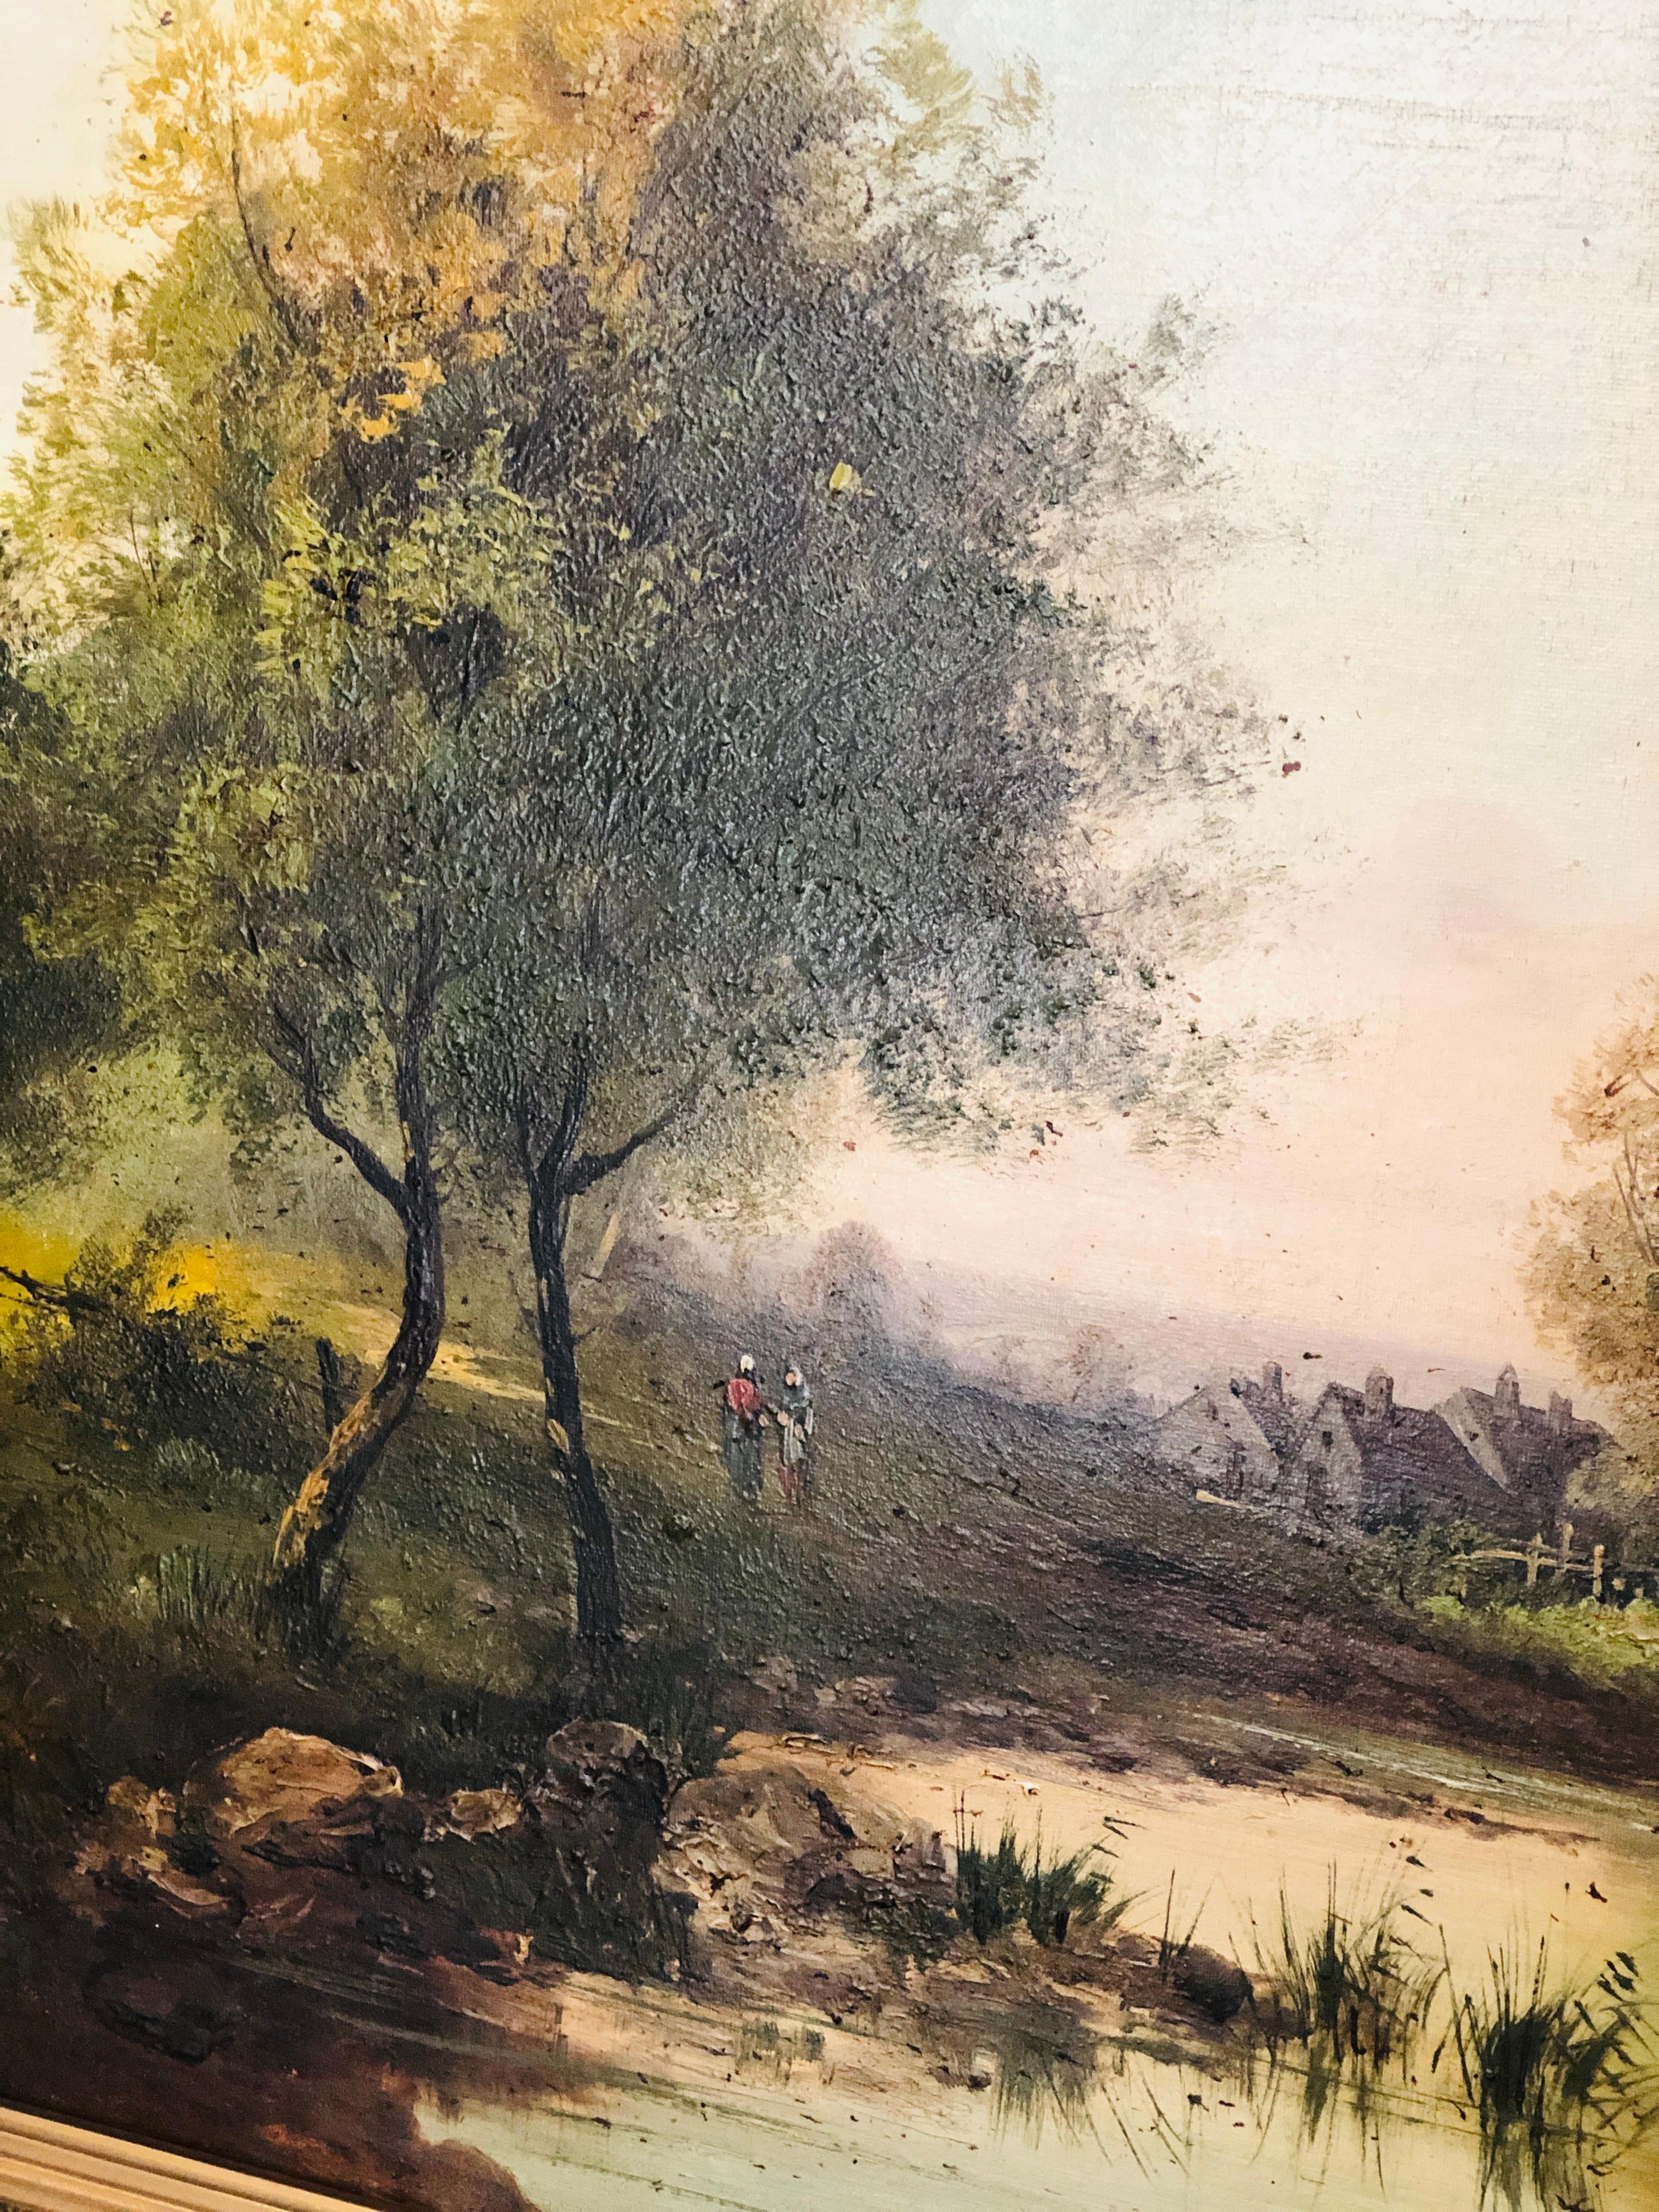 Grand tableau de l'artiste français Alphonse Levy.
La technique utilisée est l'huile sur toile et l'œuvre est placée dans son cadre d'origine.
Très bon état, signé en bas à gauche.
France, milieu du XIXe siècle.